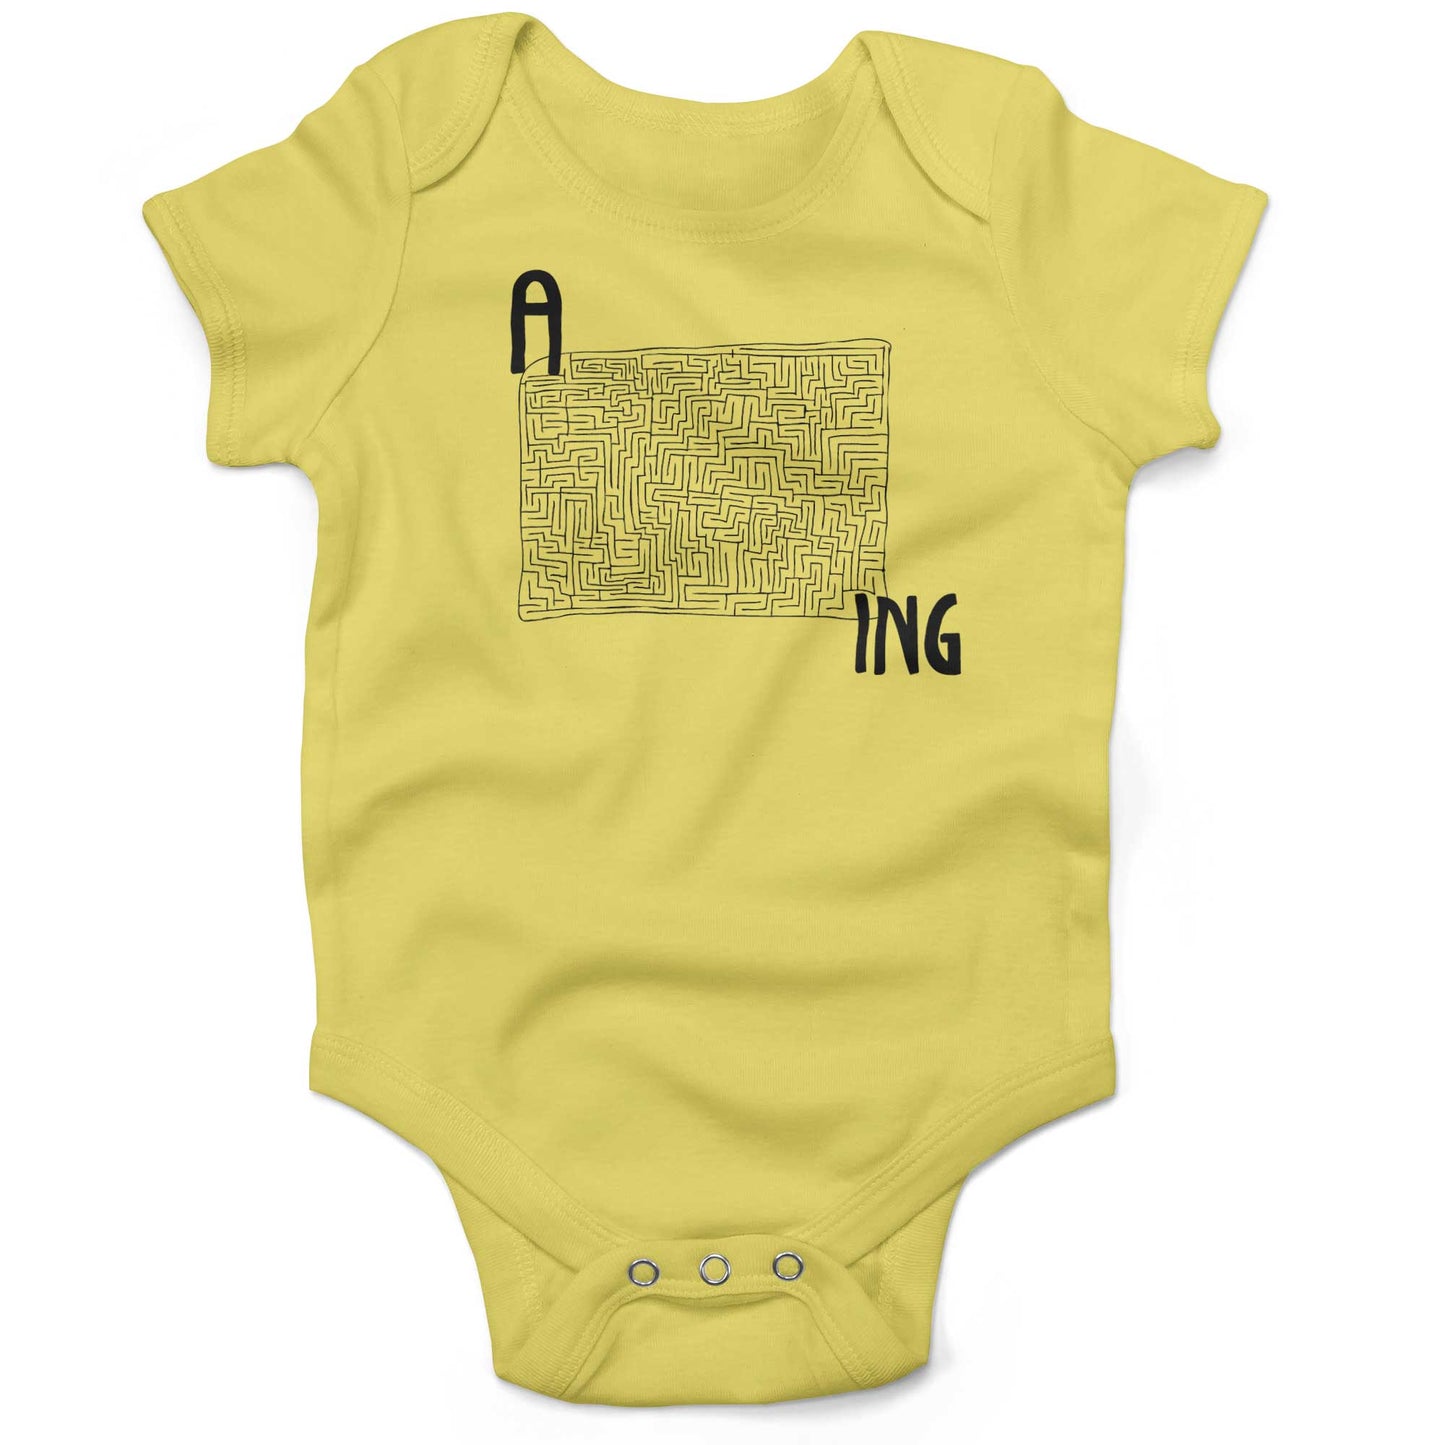 Amazing Infant Bodysuit or Raglan Baby Tee-Yellow-3-6 months